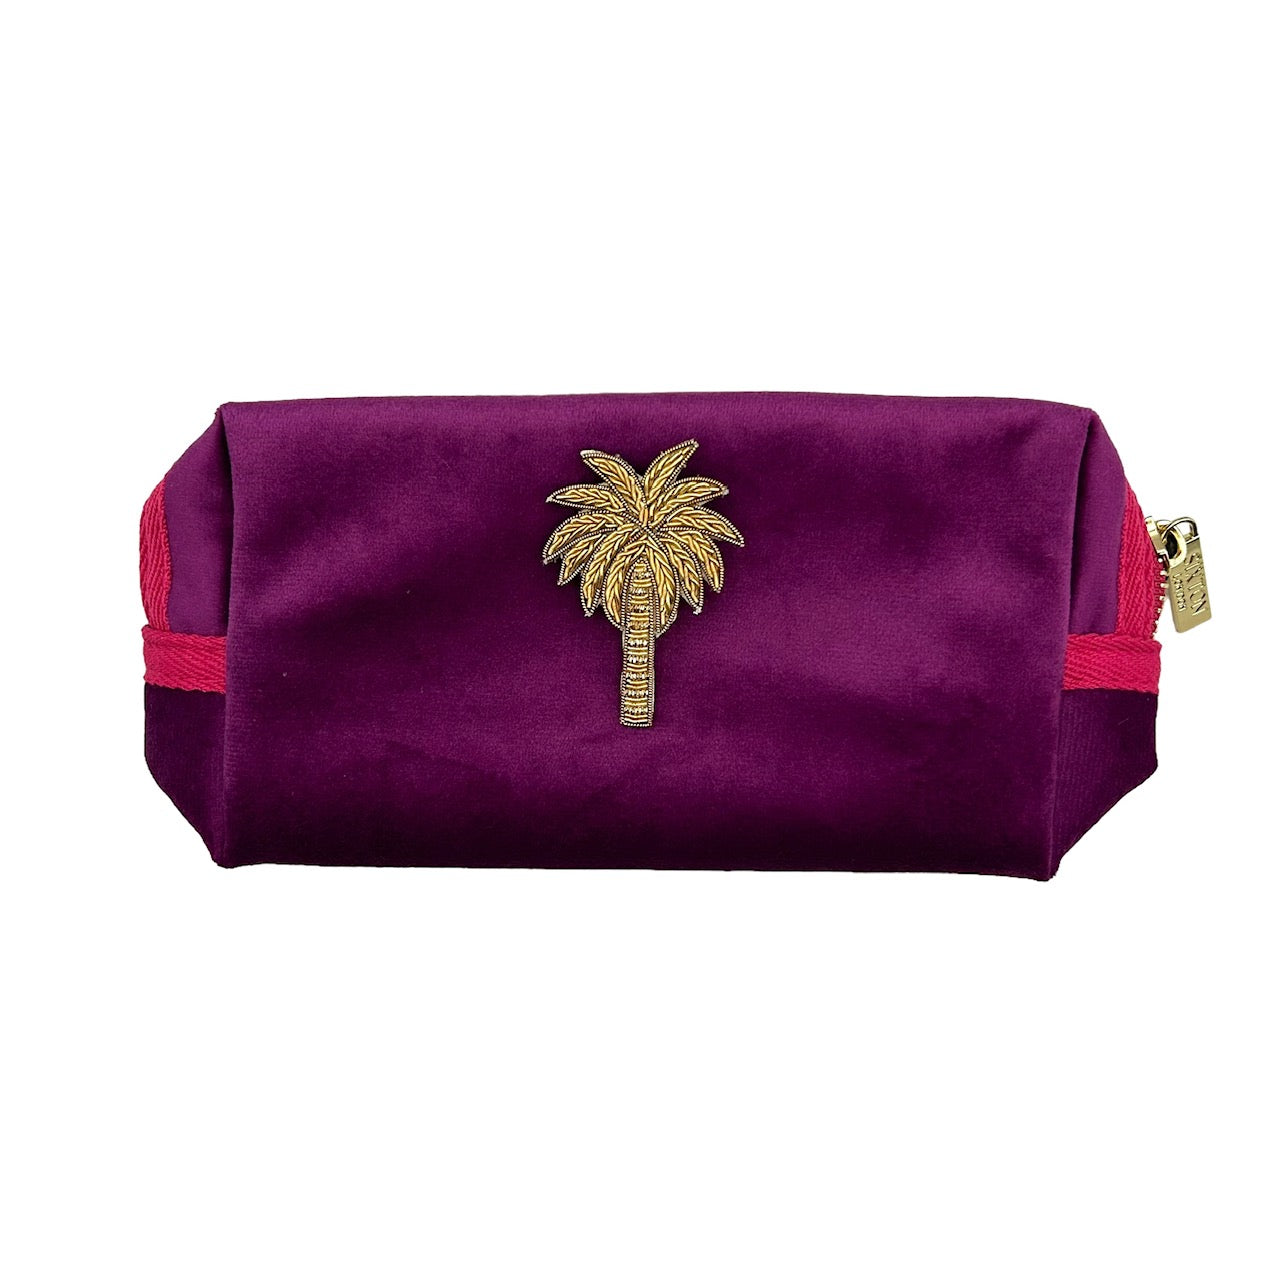 Fuchsia make-up bag & gold palm tree - recycled velvet